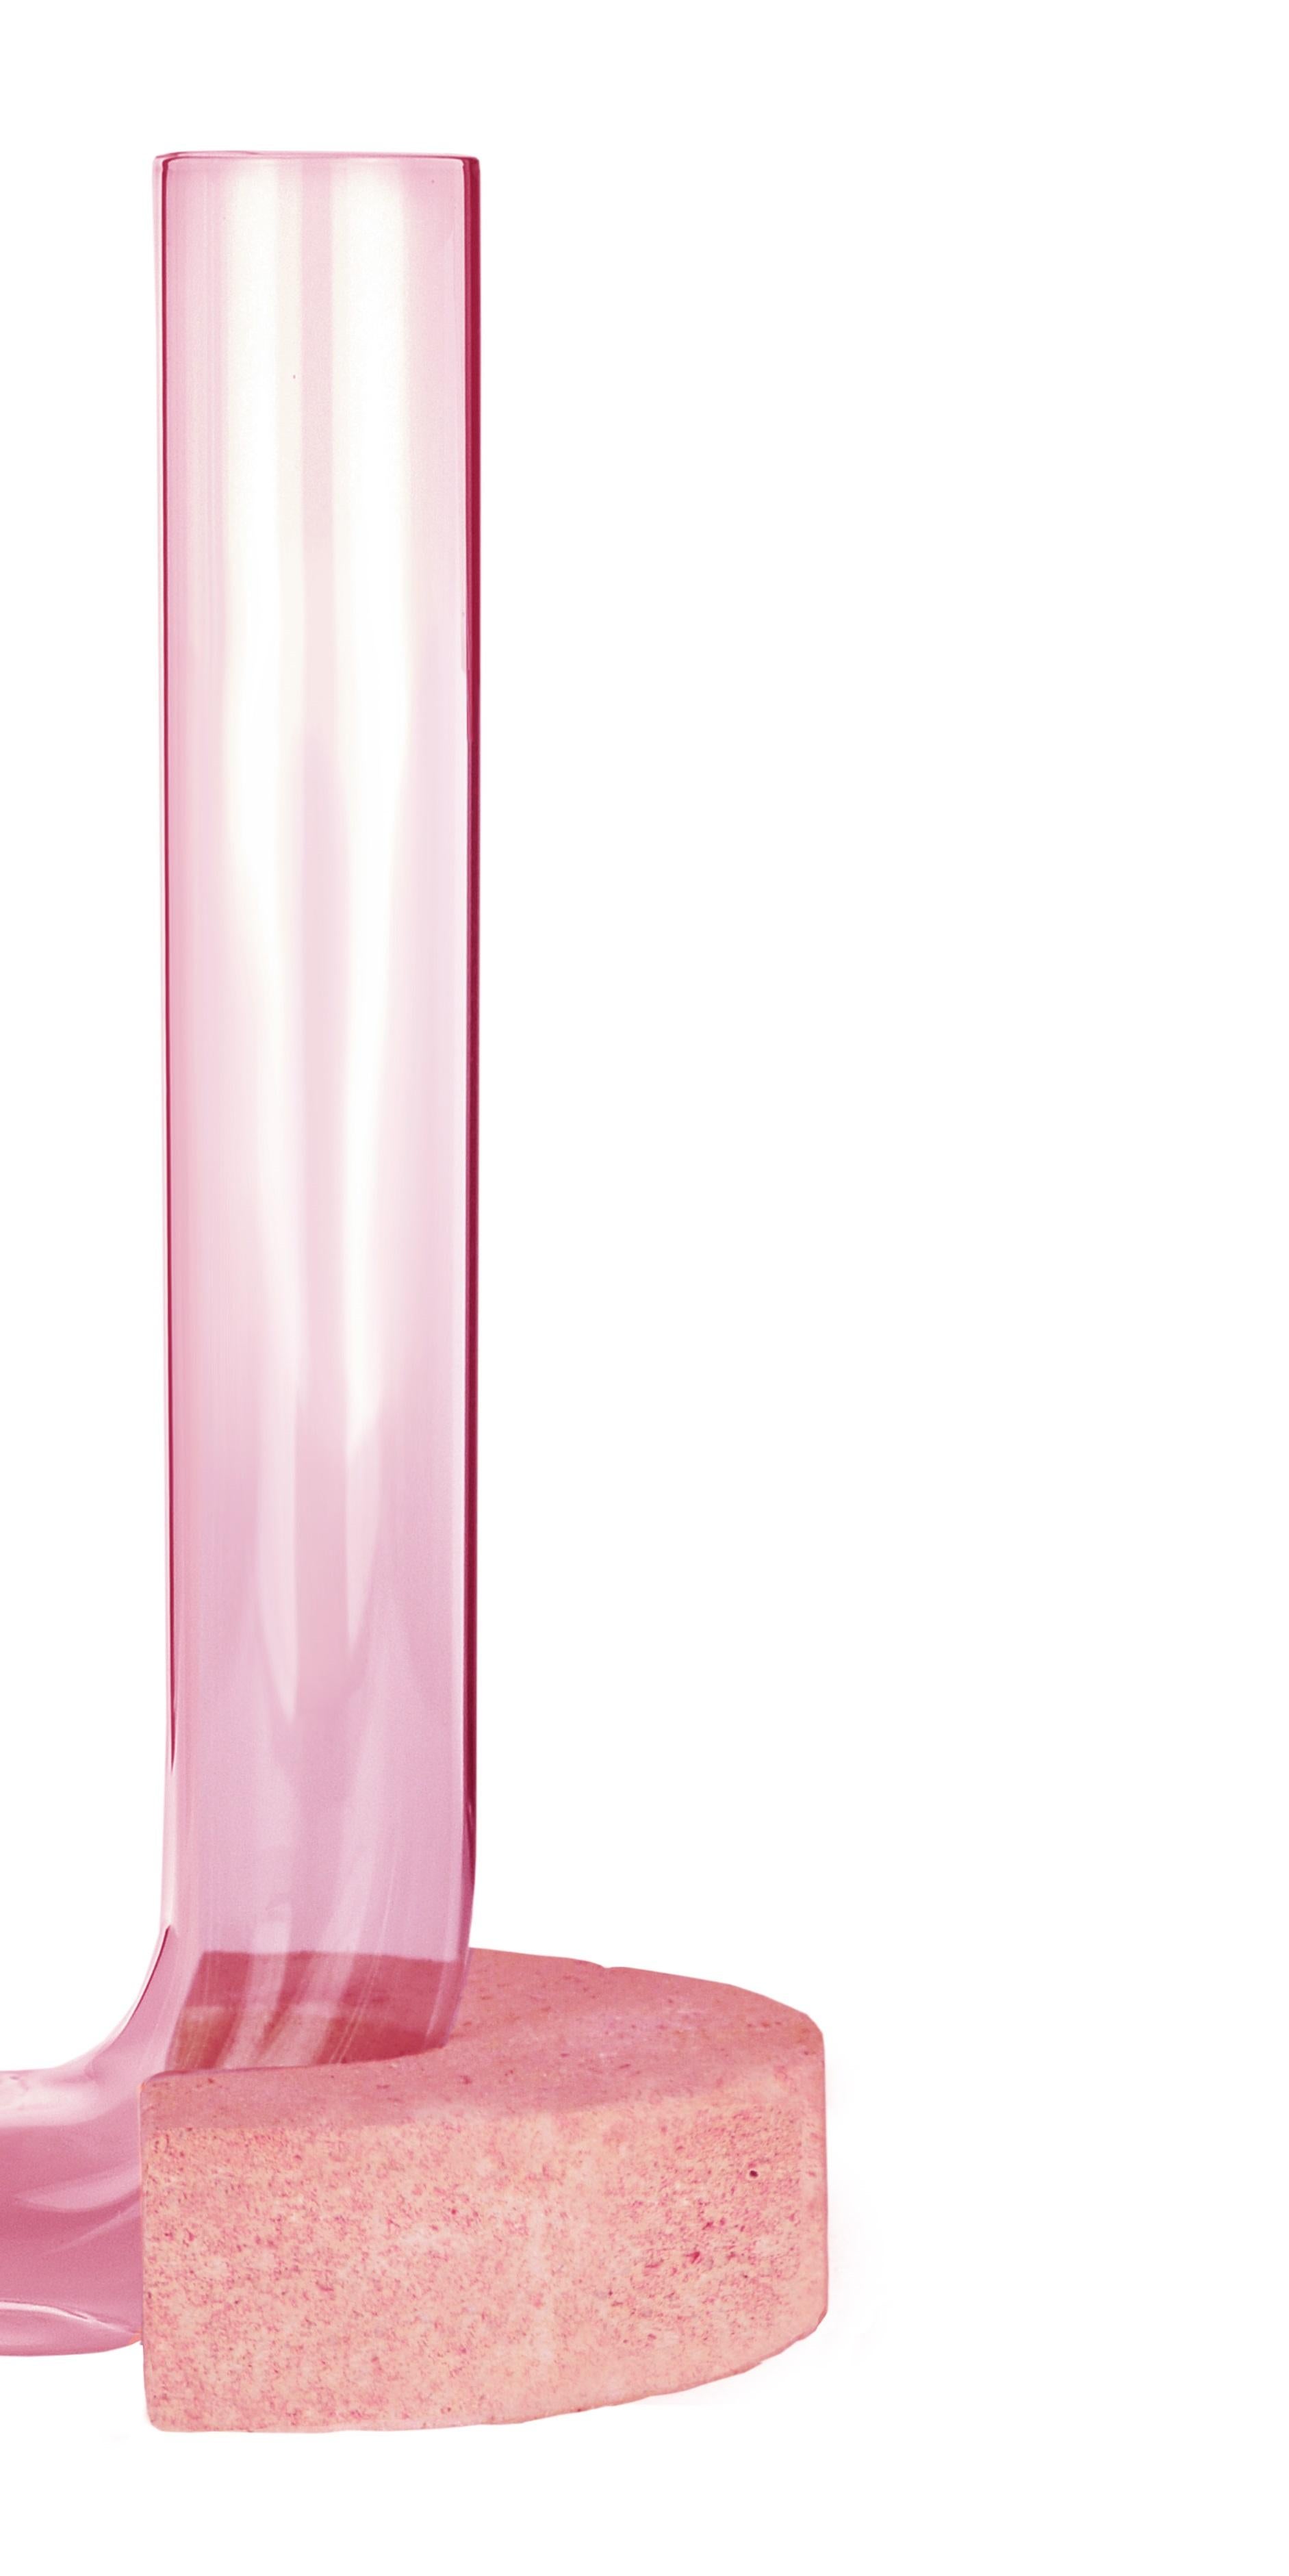 Italian Pink-Pink Cochlea Della Consapevolezza Soils Edition Vase by Coki Barbieri For Sale